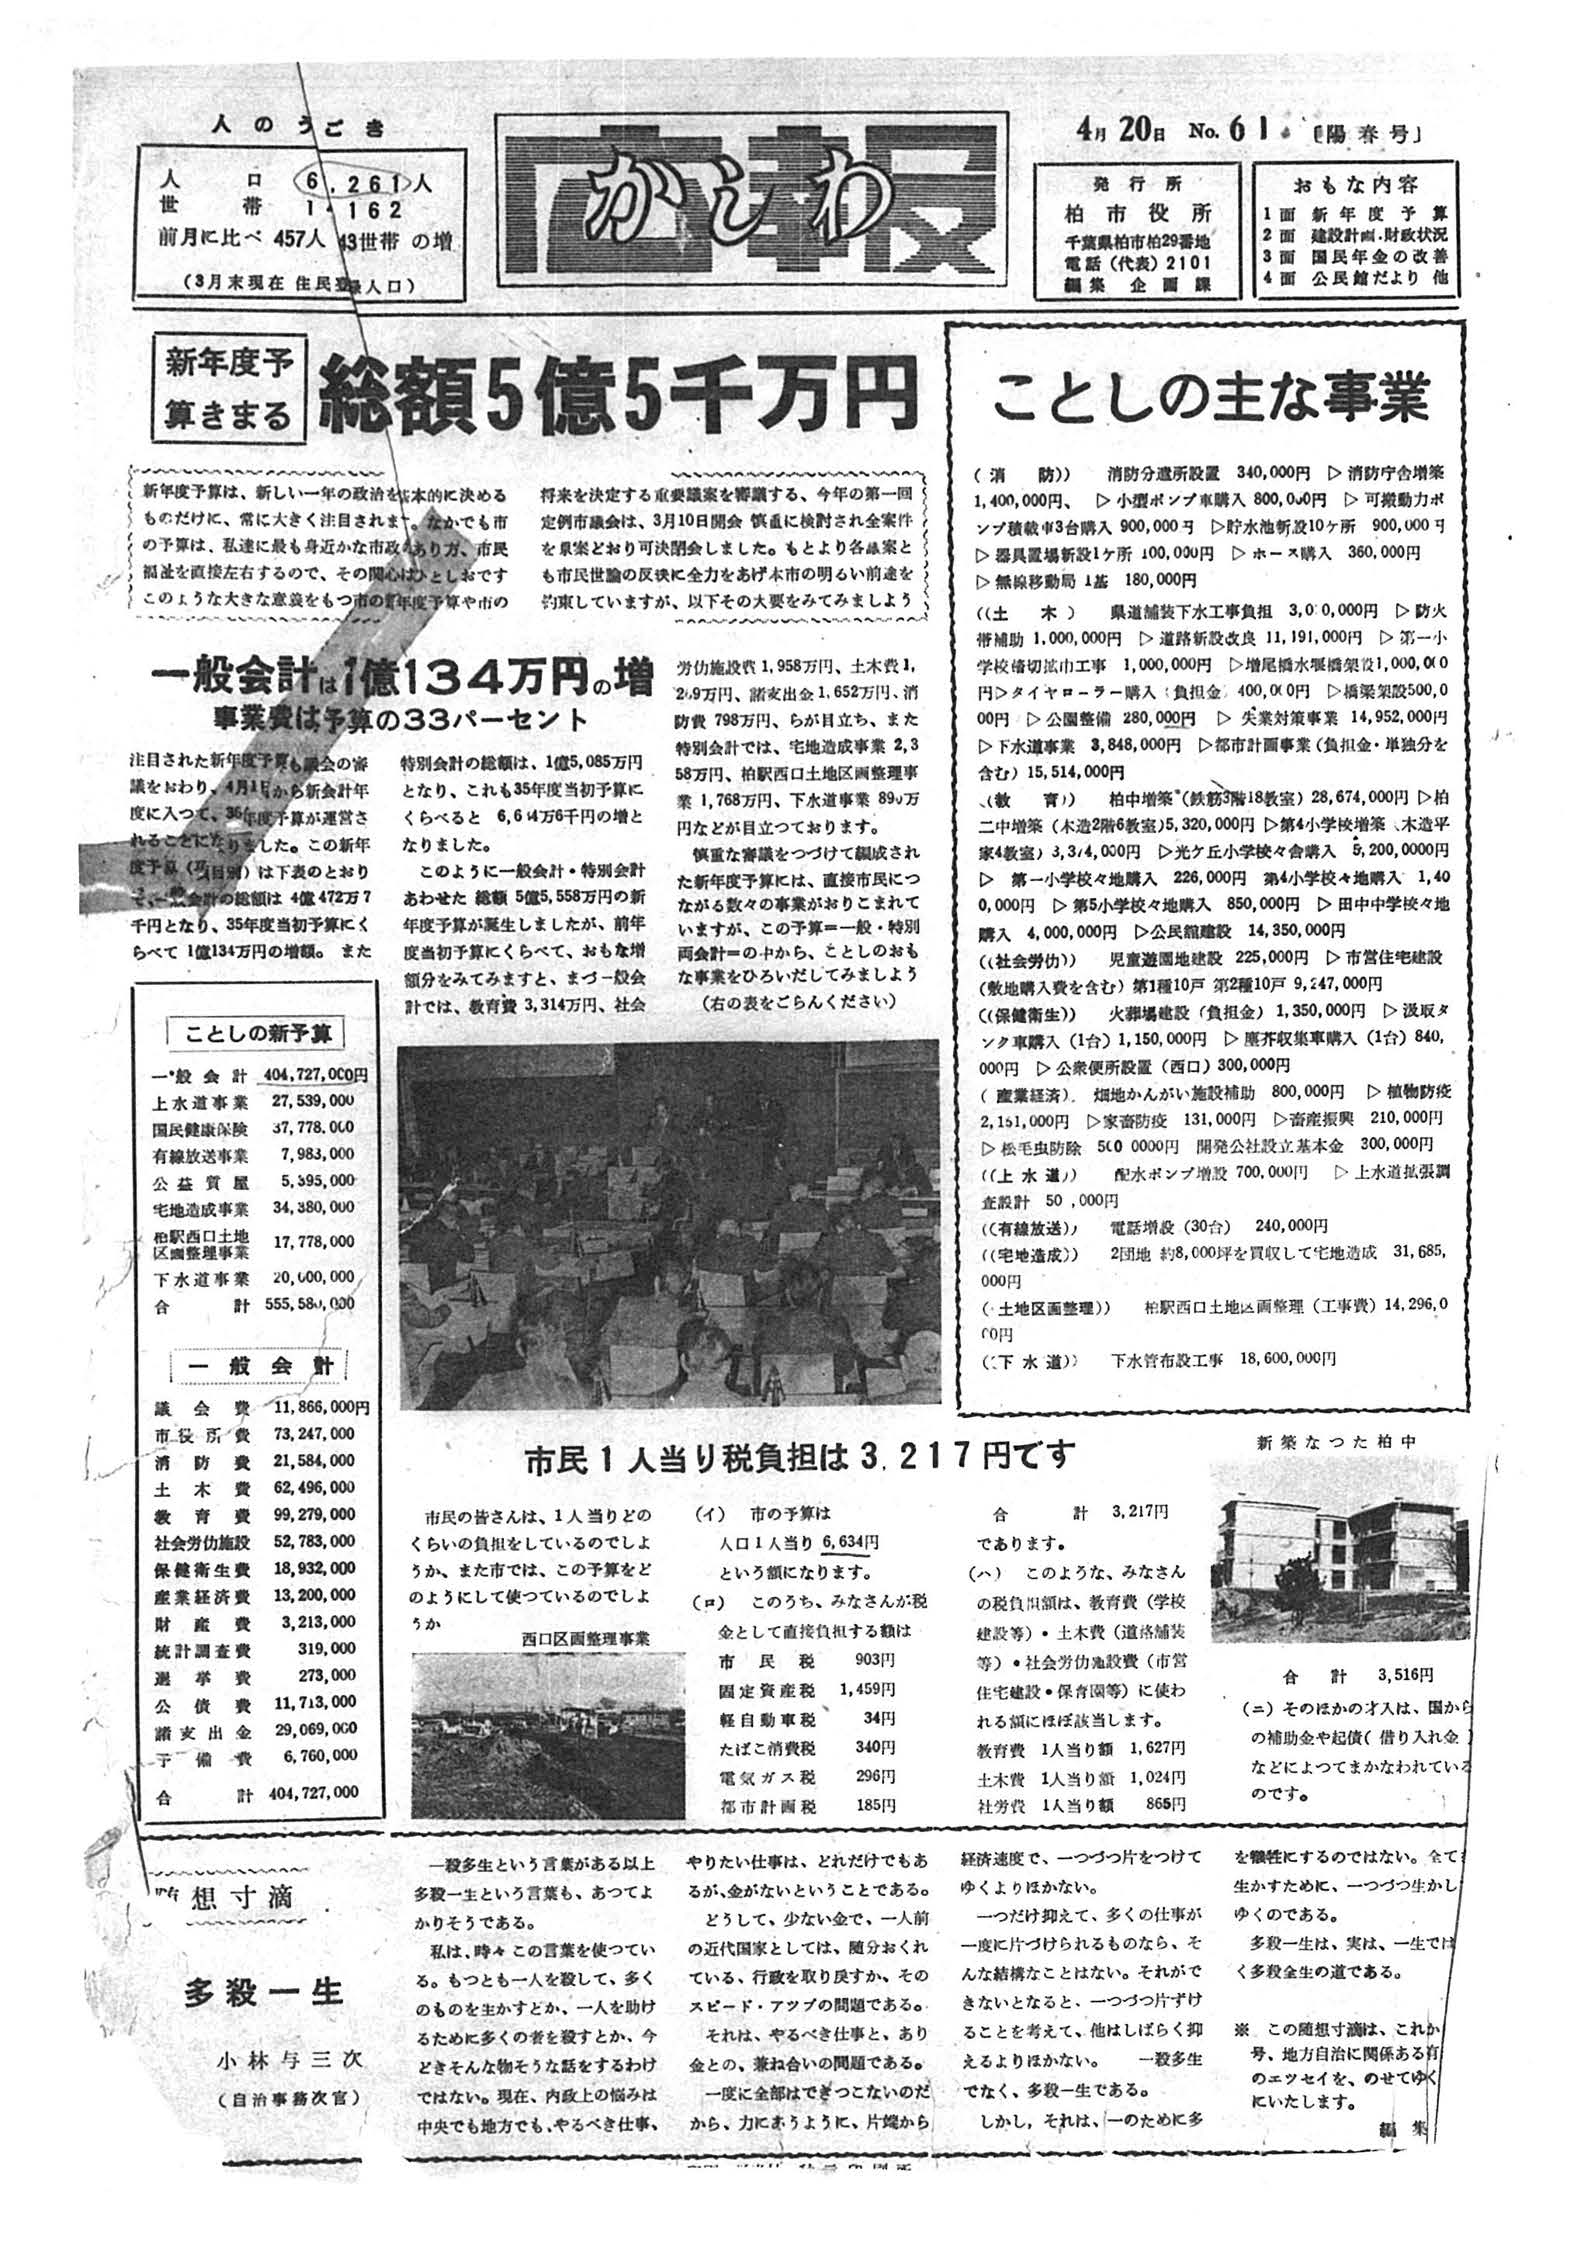 広報かしわ　昭和36年4月20日発行　61号